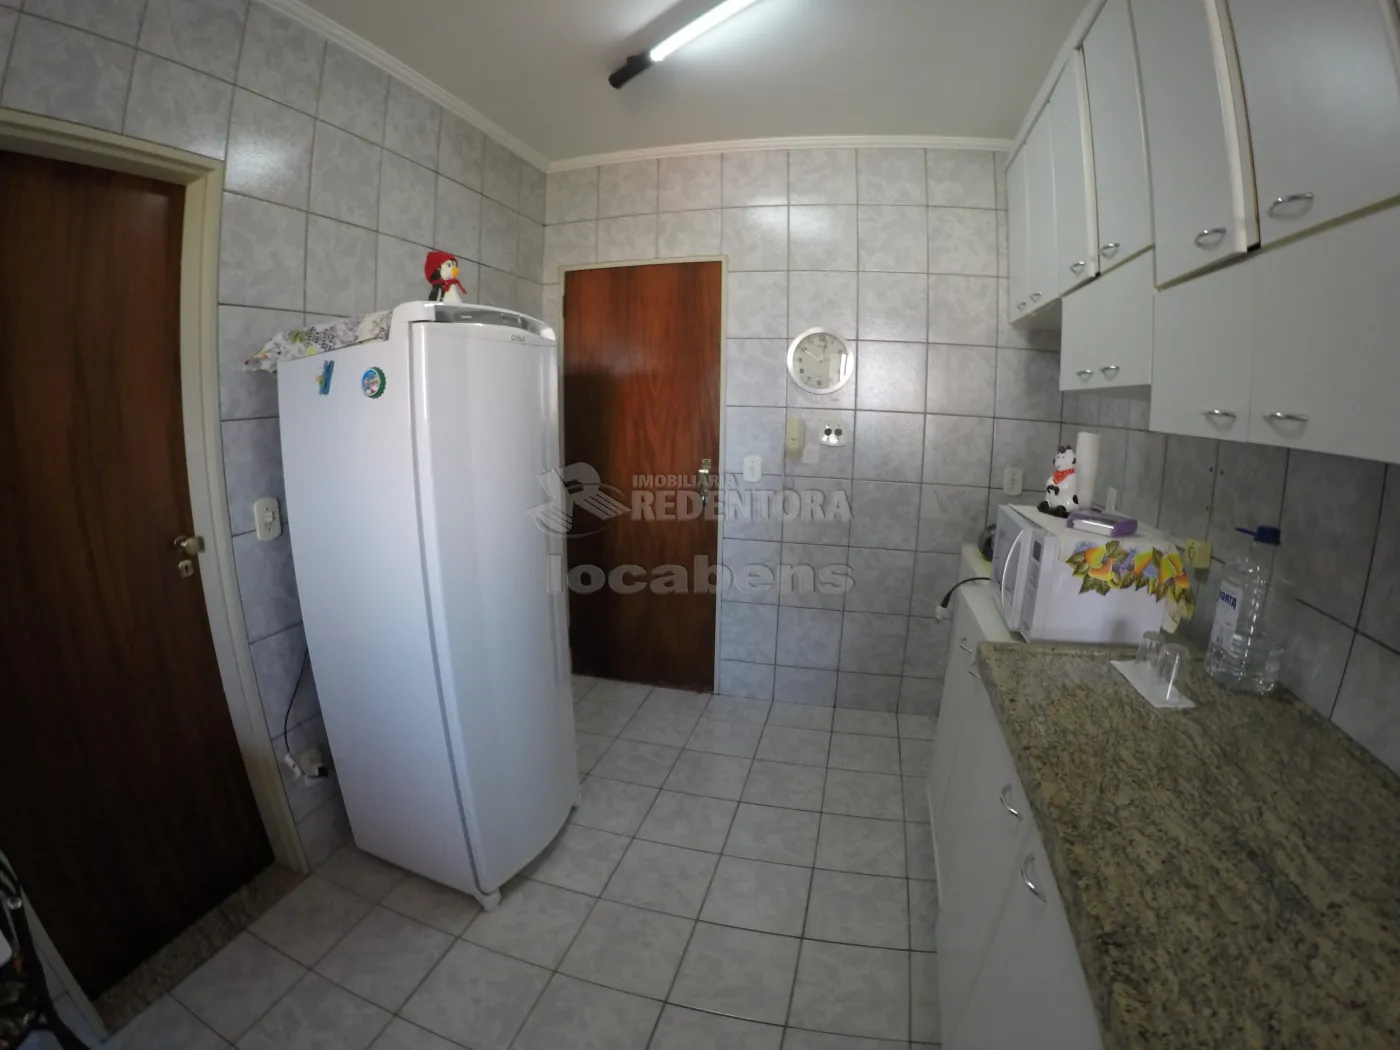 Comprar Apartamento / Padrão em São José do Rio Preto apenas R$ 480.000,00 - Foto 6